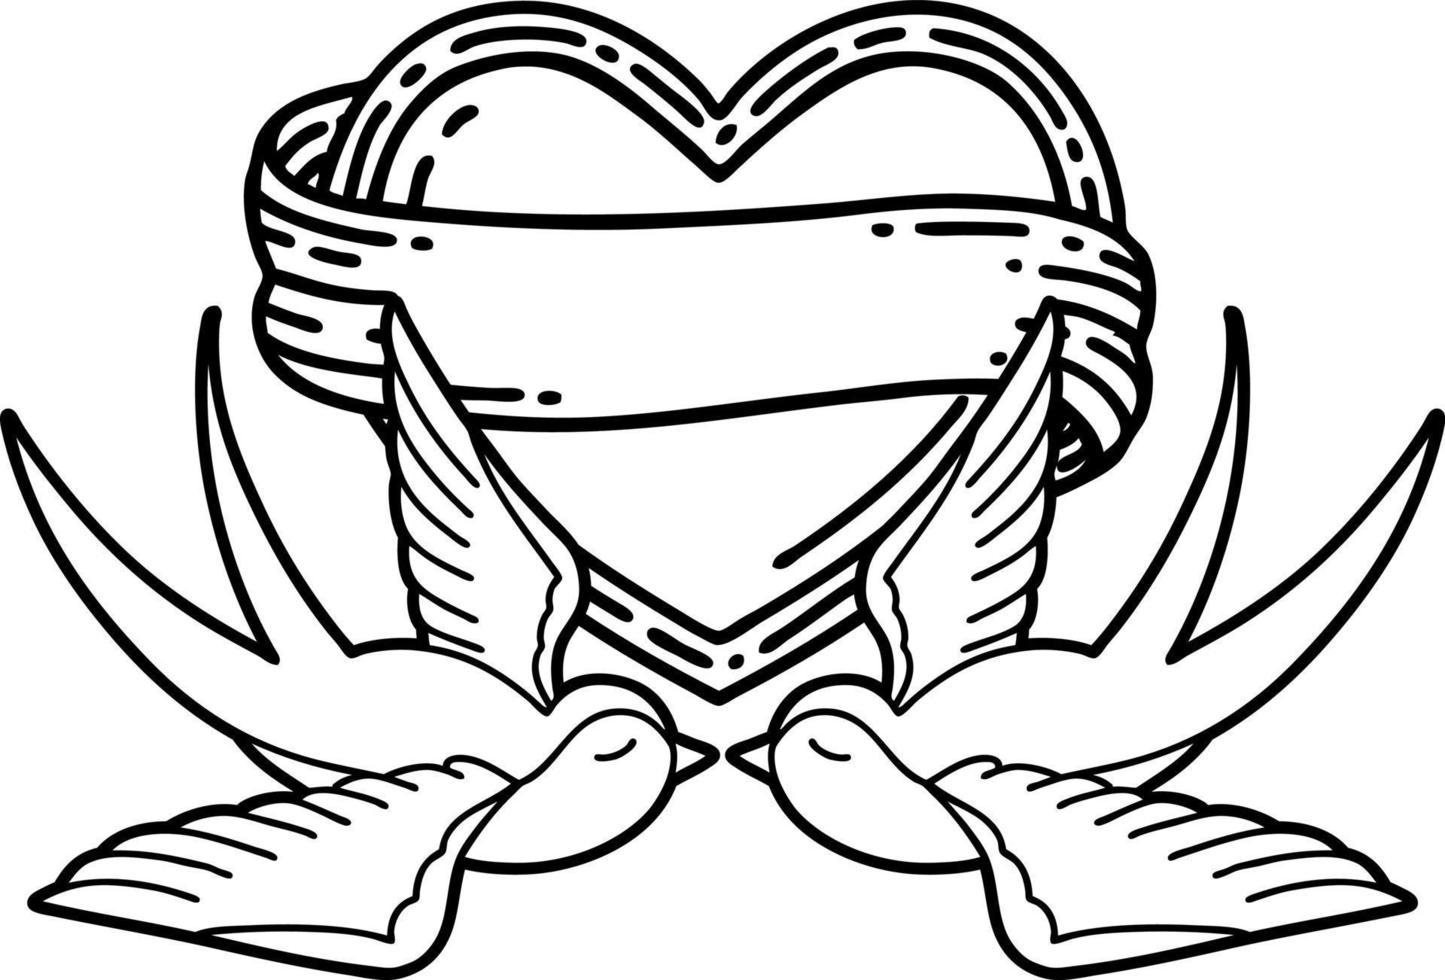 tatuaje en estilo de línea negra de golondrinas y un corazón con pancarta vector